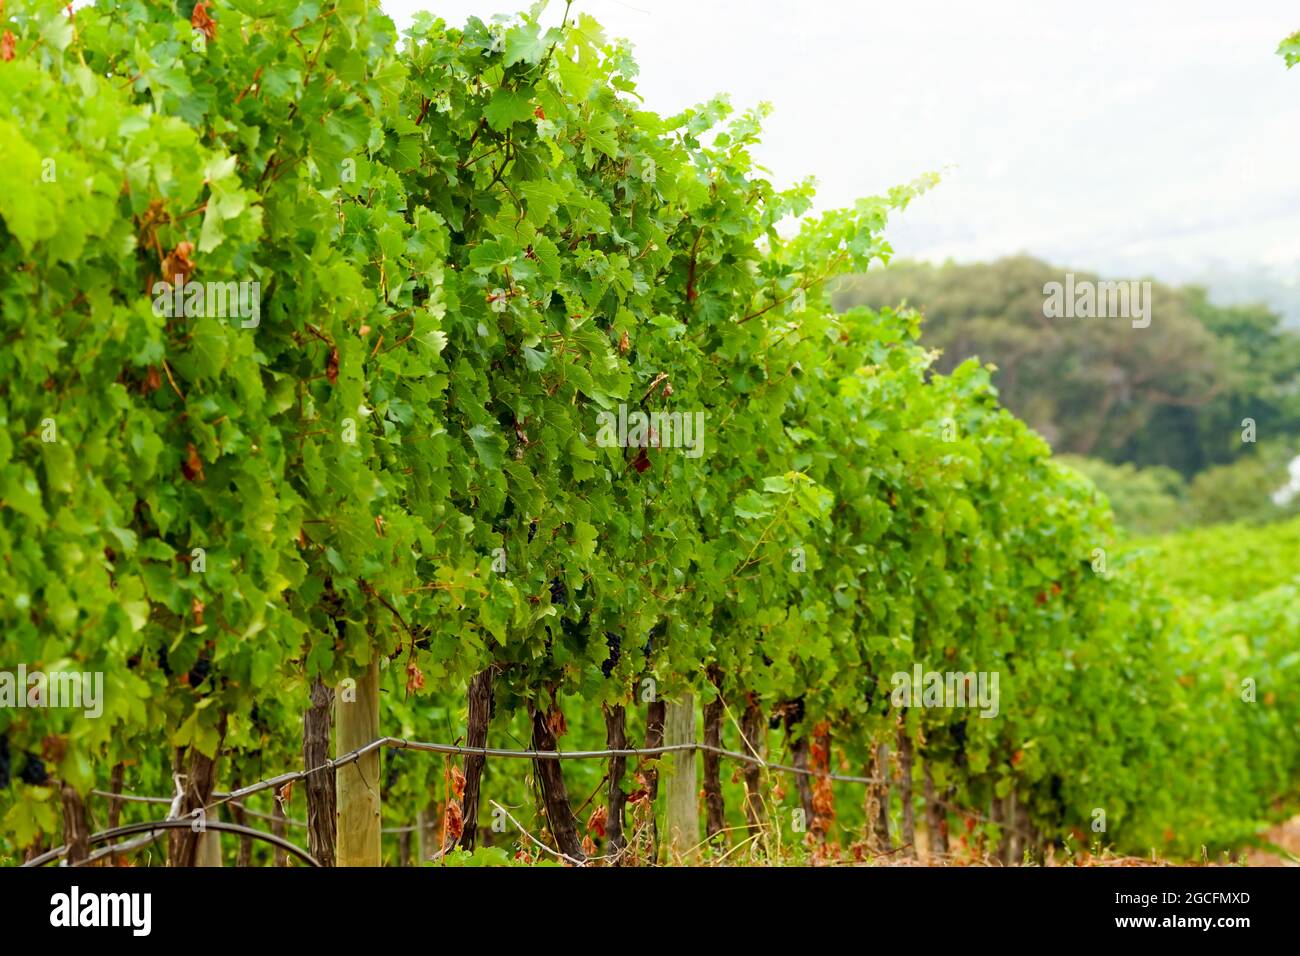 Primo piano di una fila o di una linea di viti in un vigneto in un'azienda vinicola in Sud Africa in estate con foglie verdi e uve nere nascoste Foto Stock